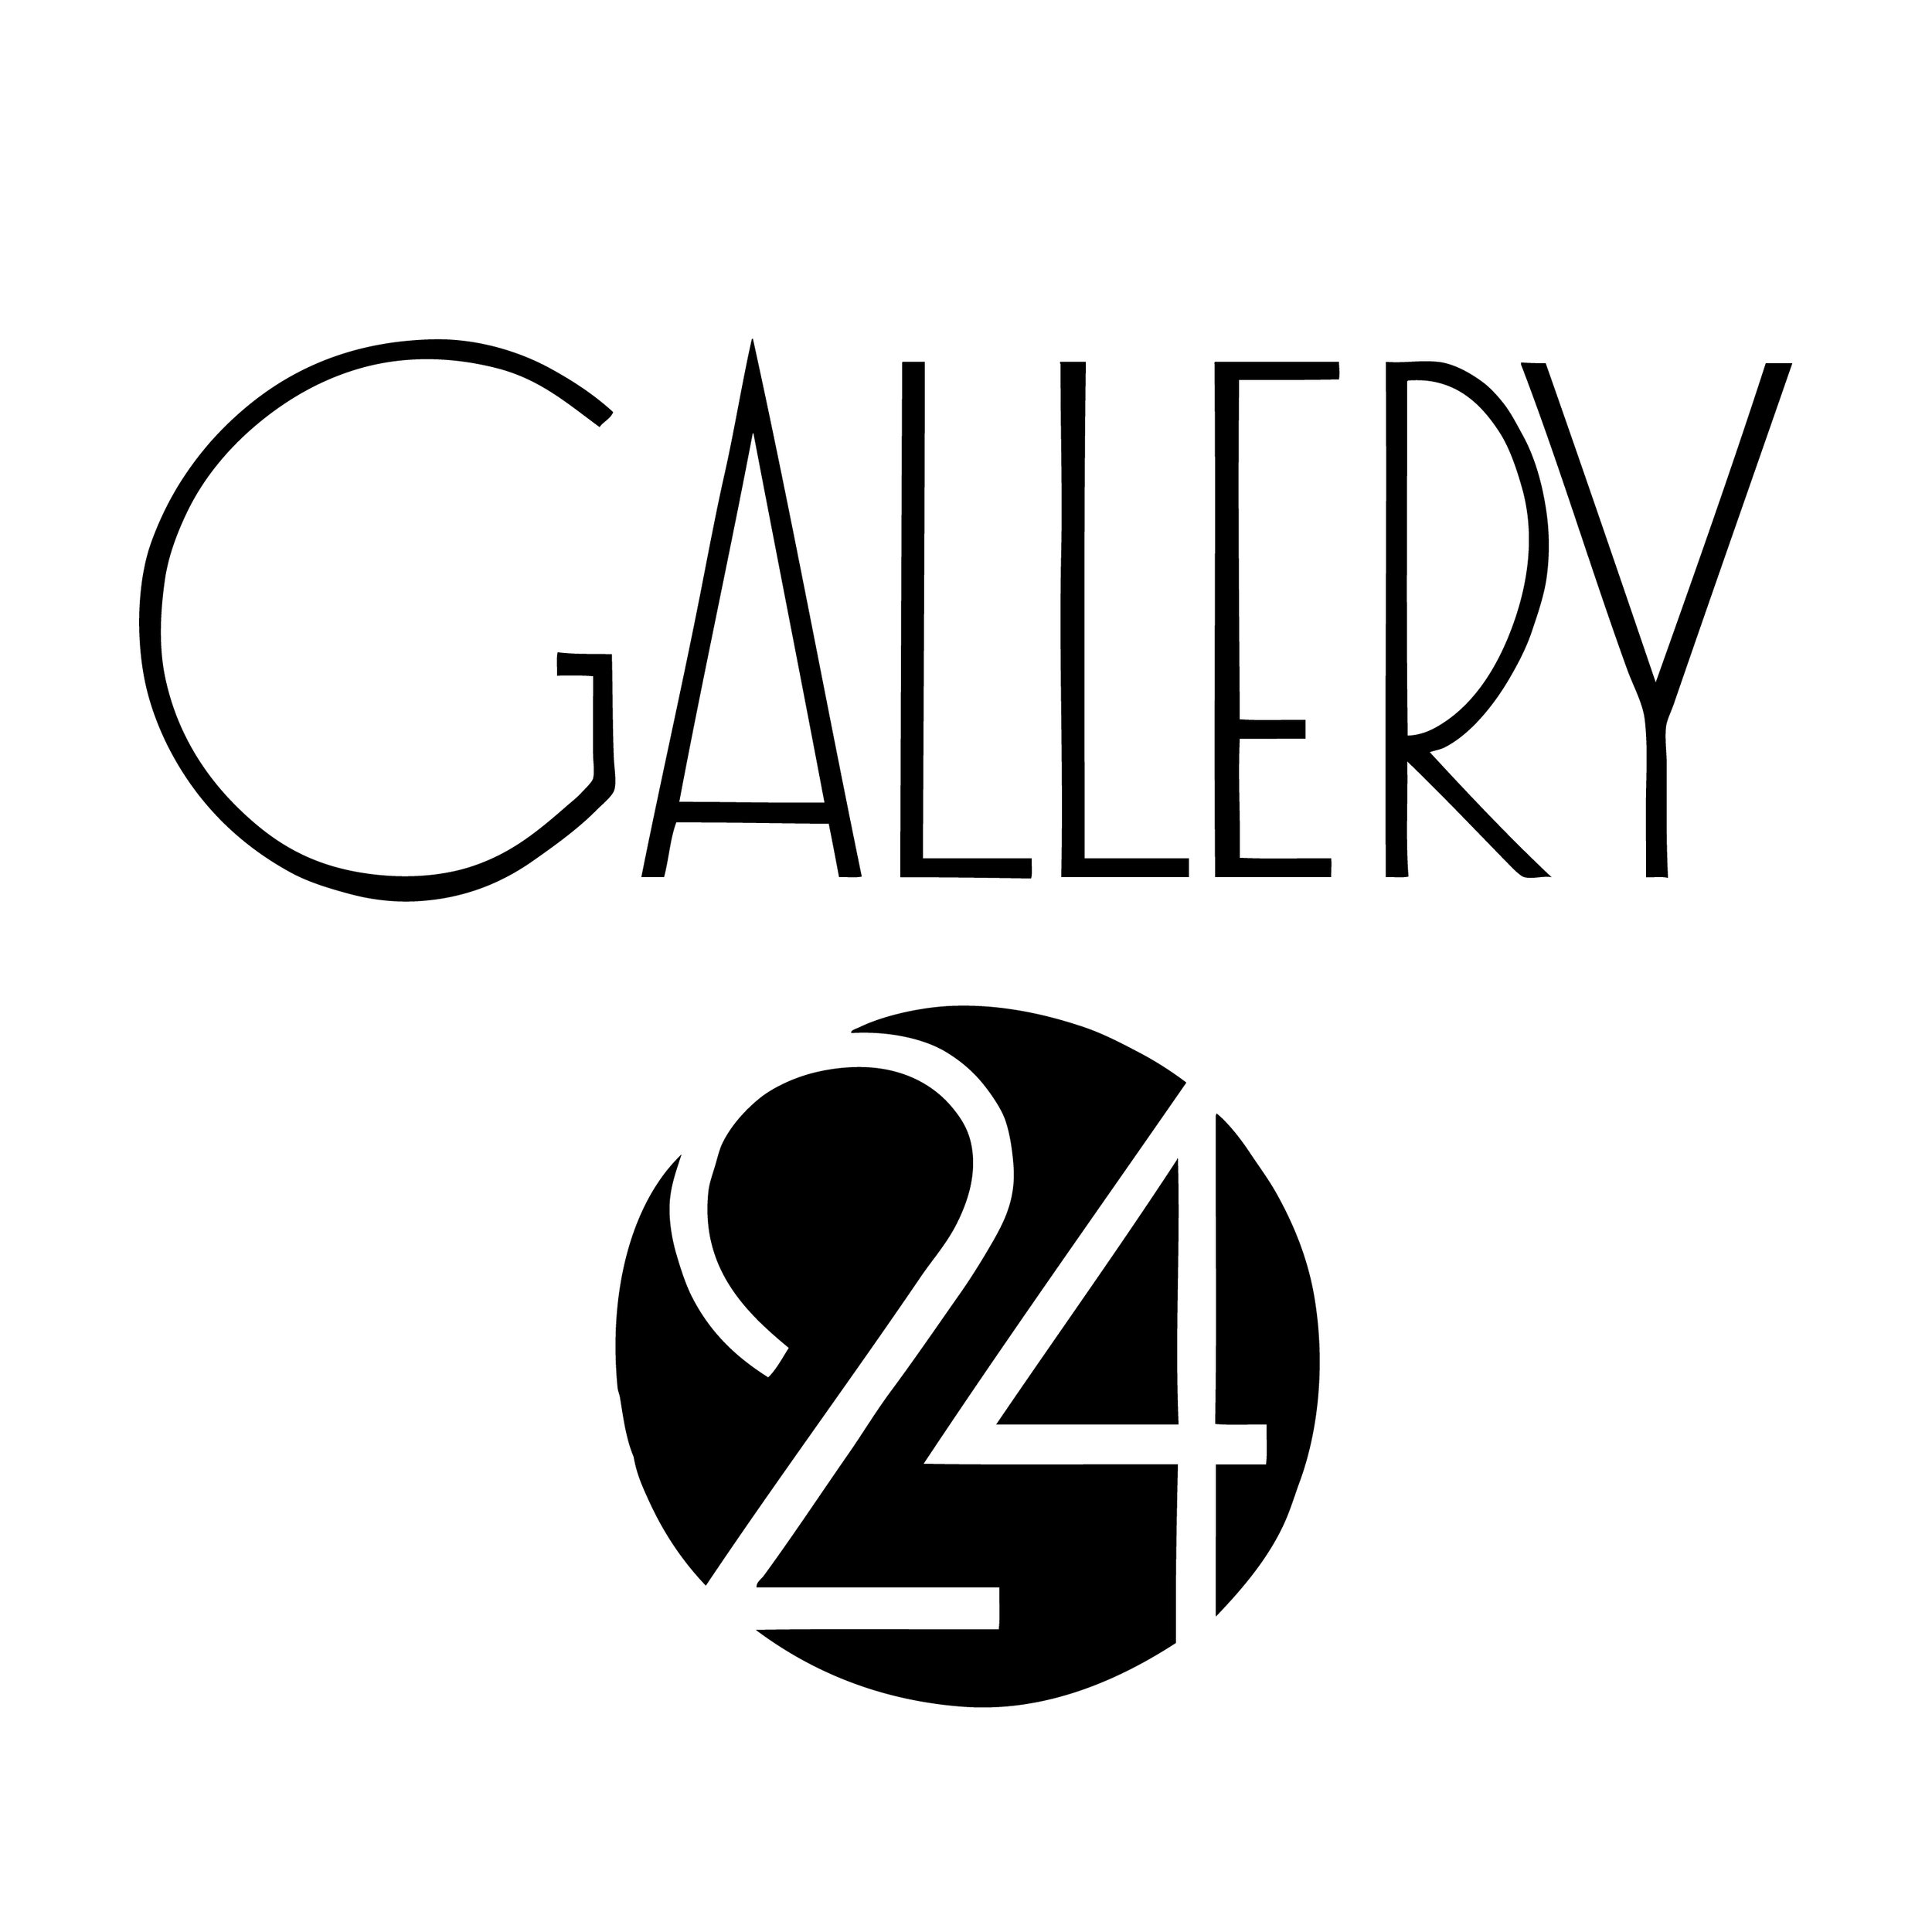 Gallery 24 Sacramento 